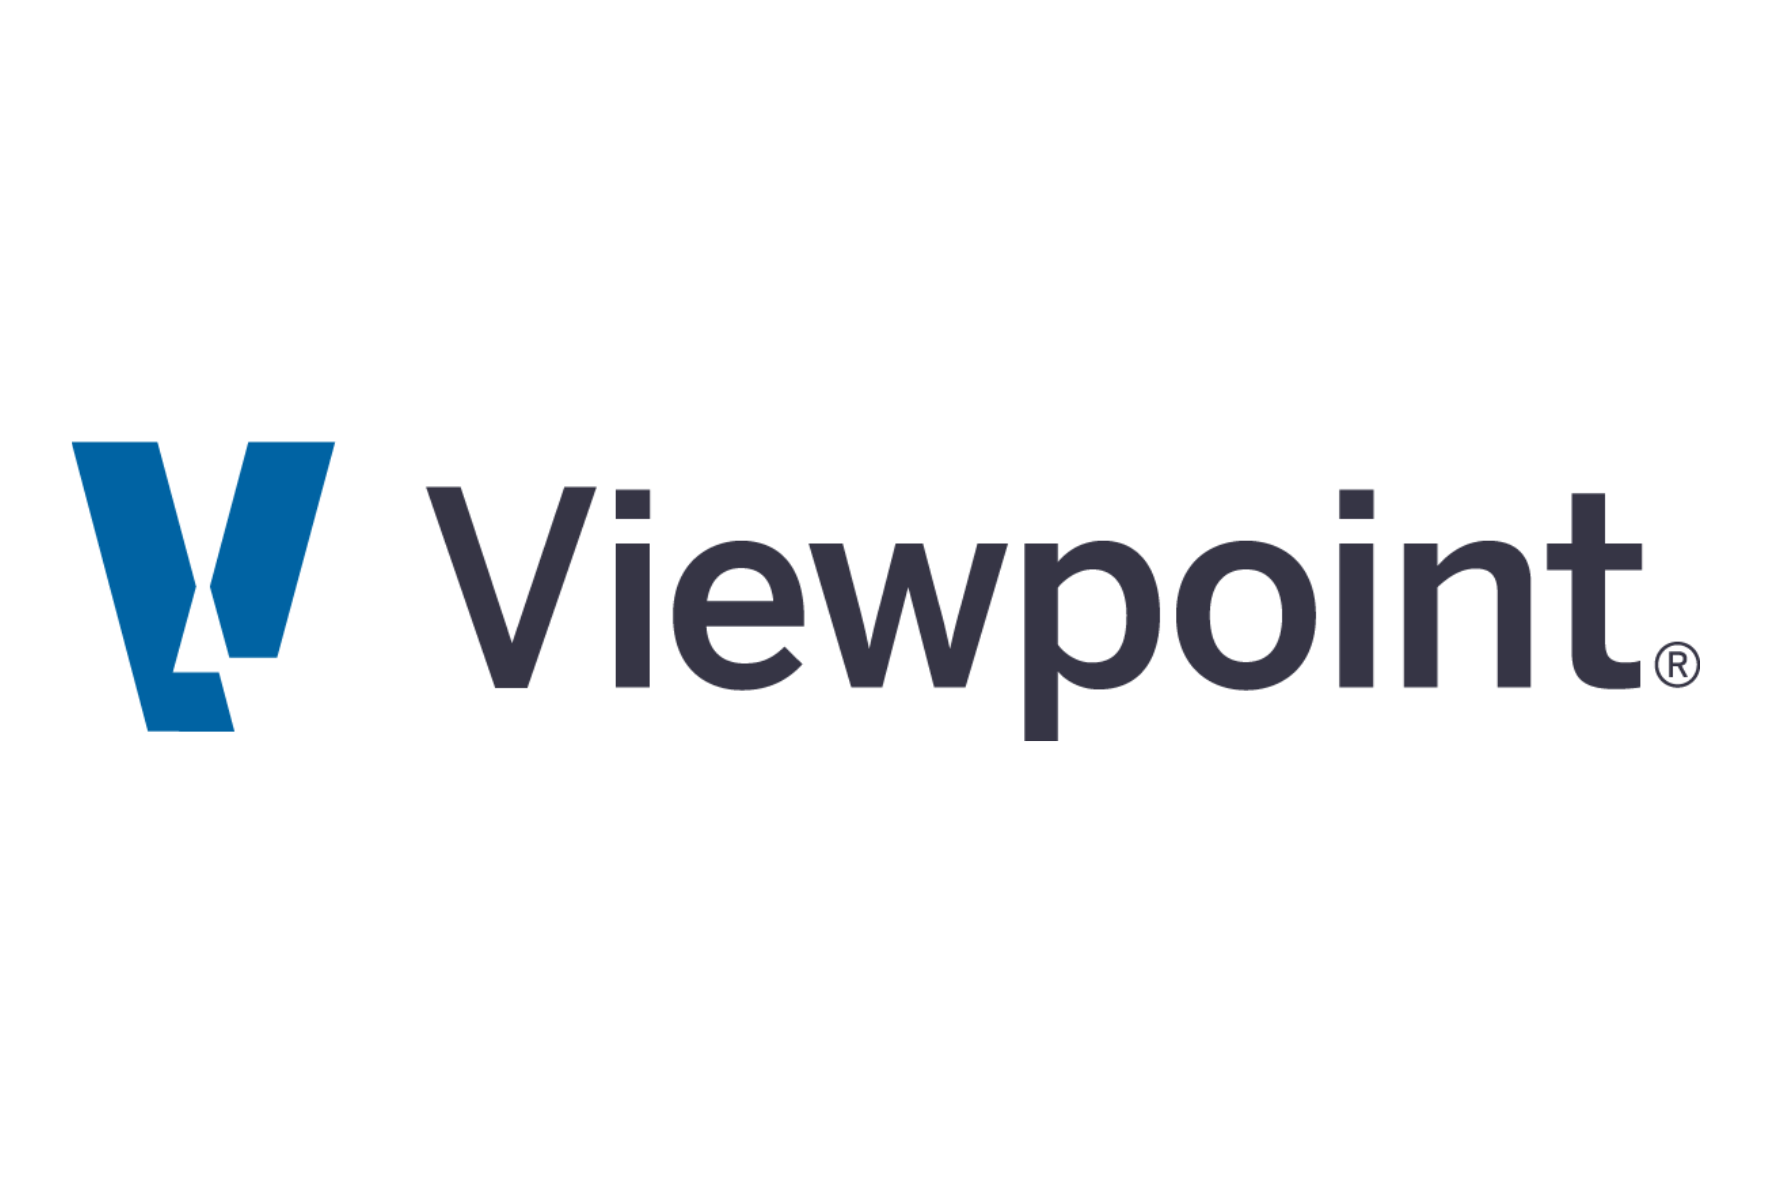 Vista Viewpoint